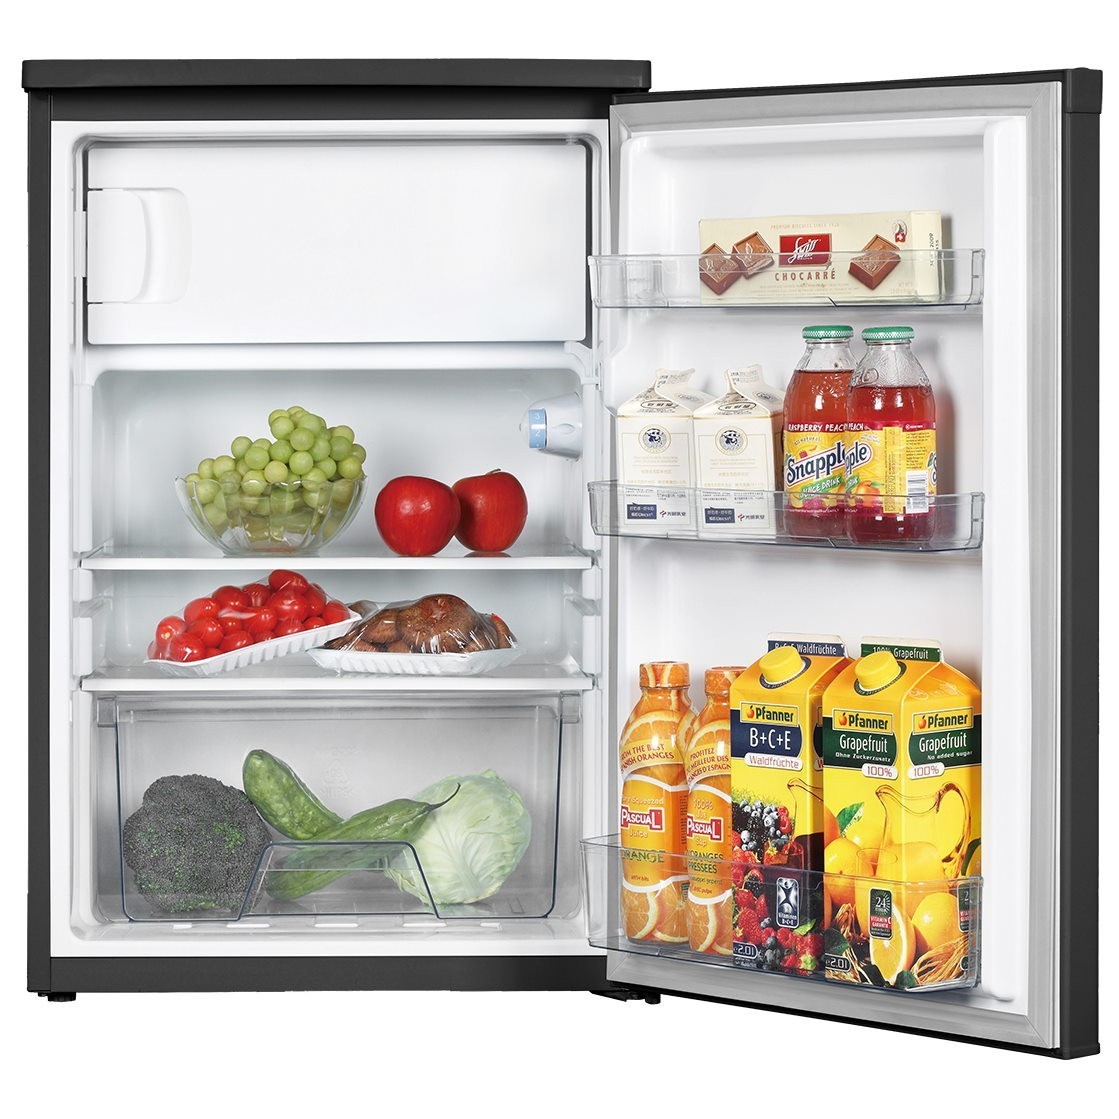 Холодильник Concept LT3560WH